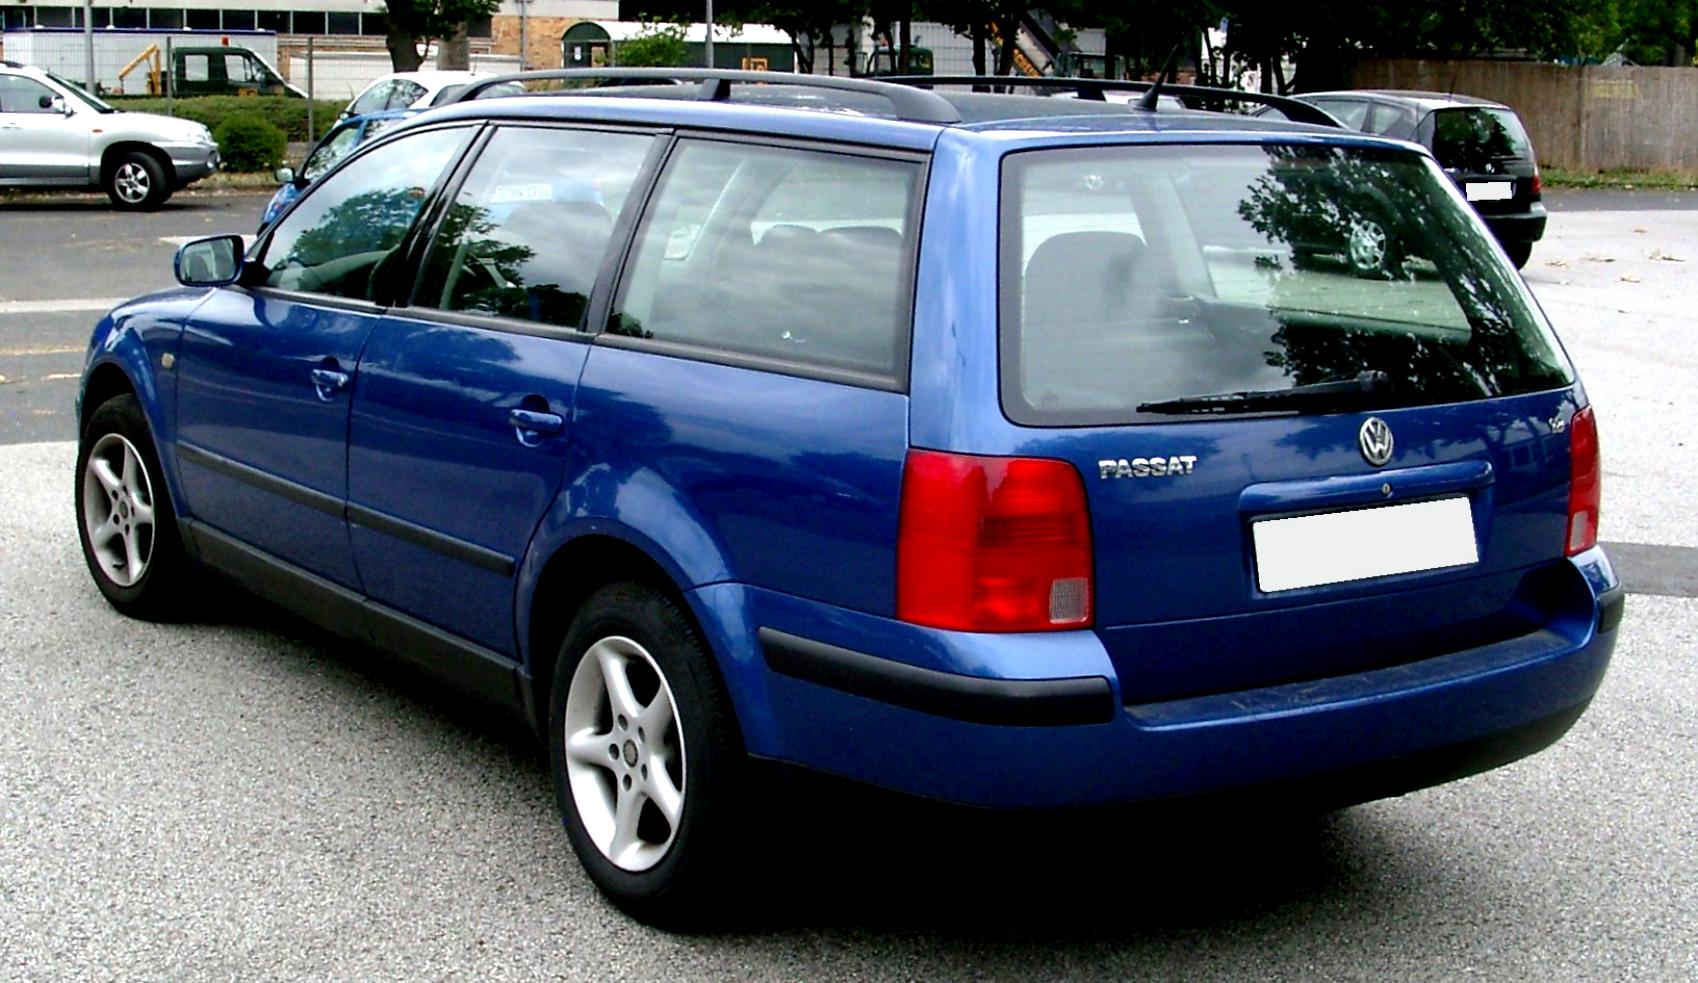 Пассат 5 универсал. VW Passat b5 variant. Фольксваген Пассат в5 универсал. VW Passat b5 универсал. VW Passat variant b5 1999.